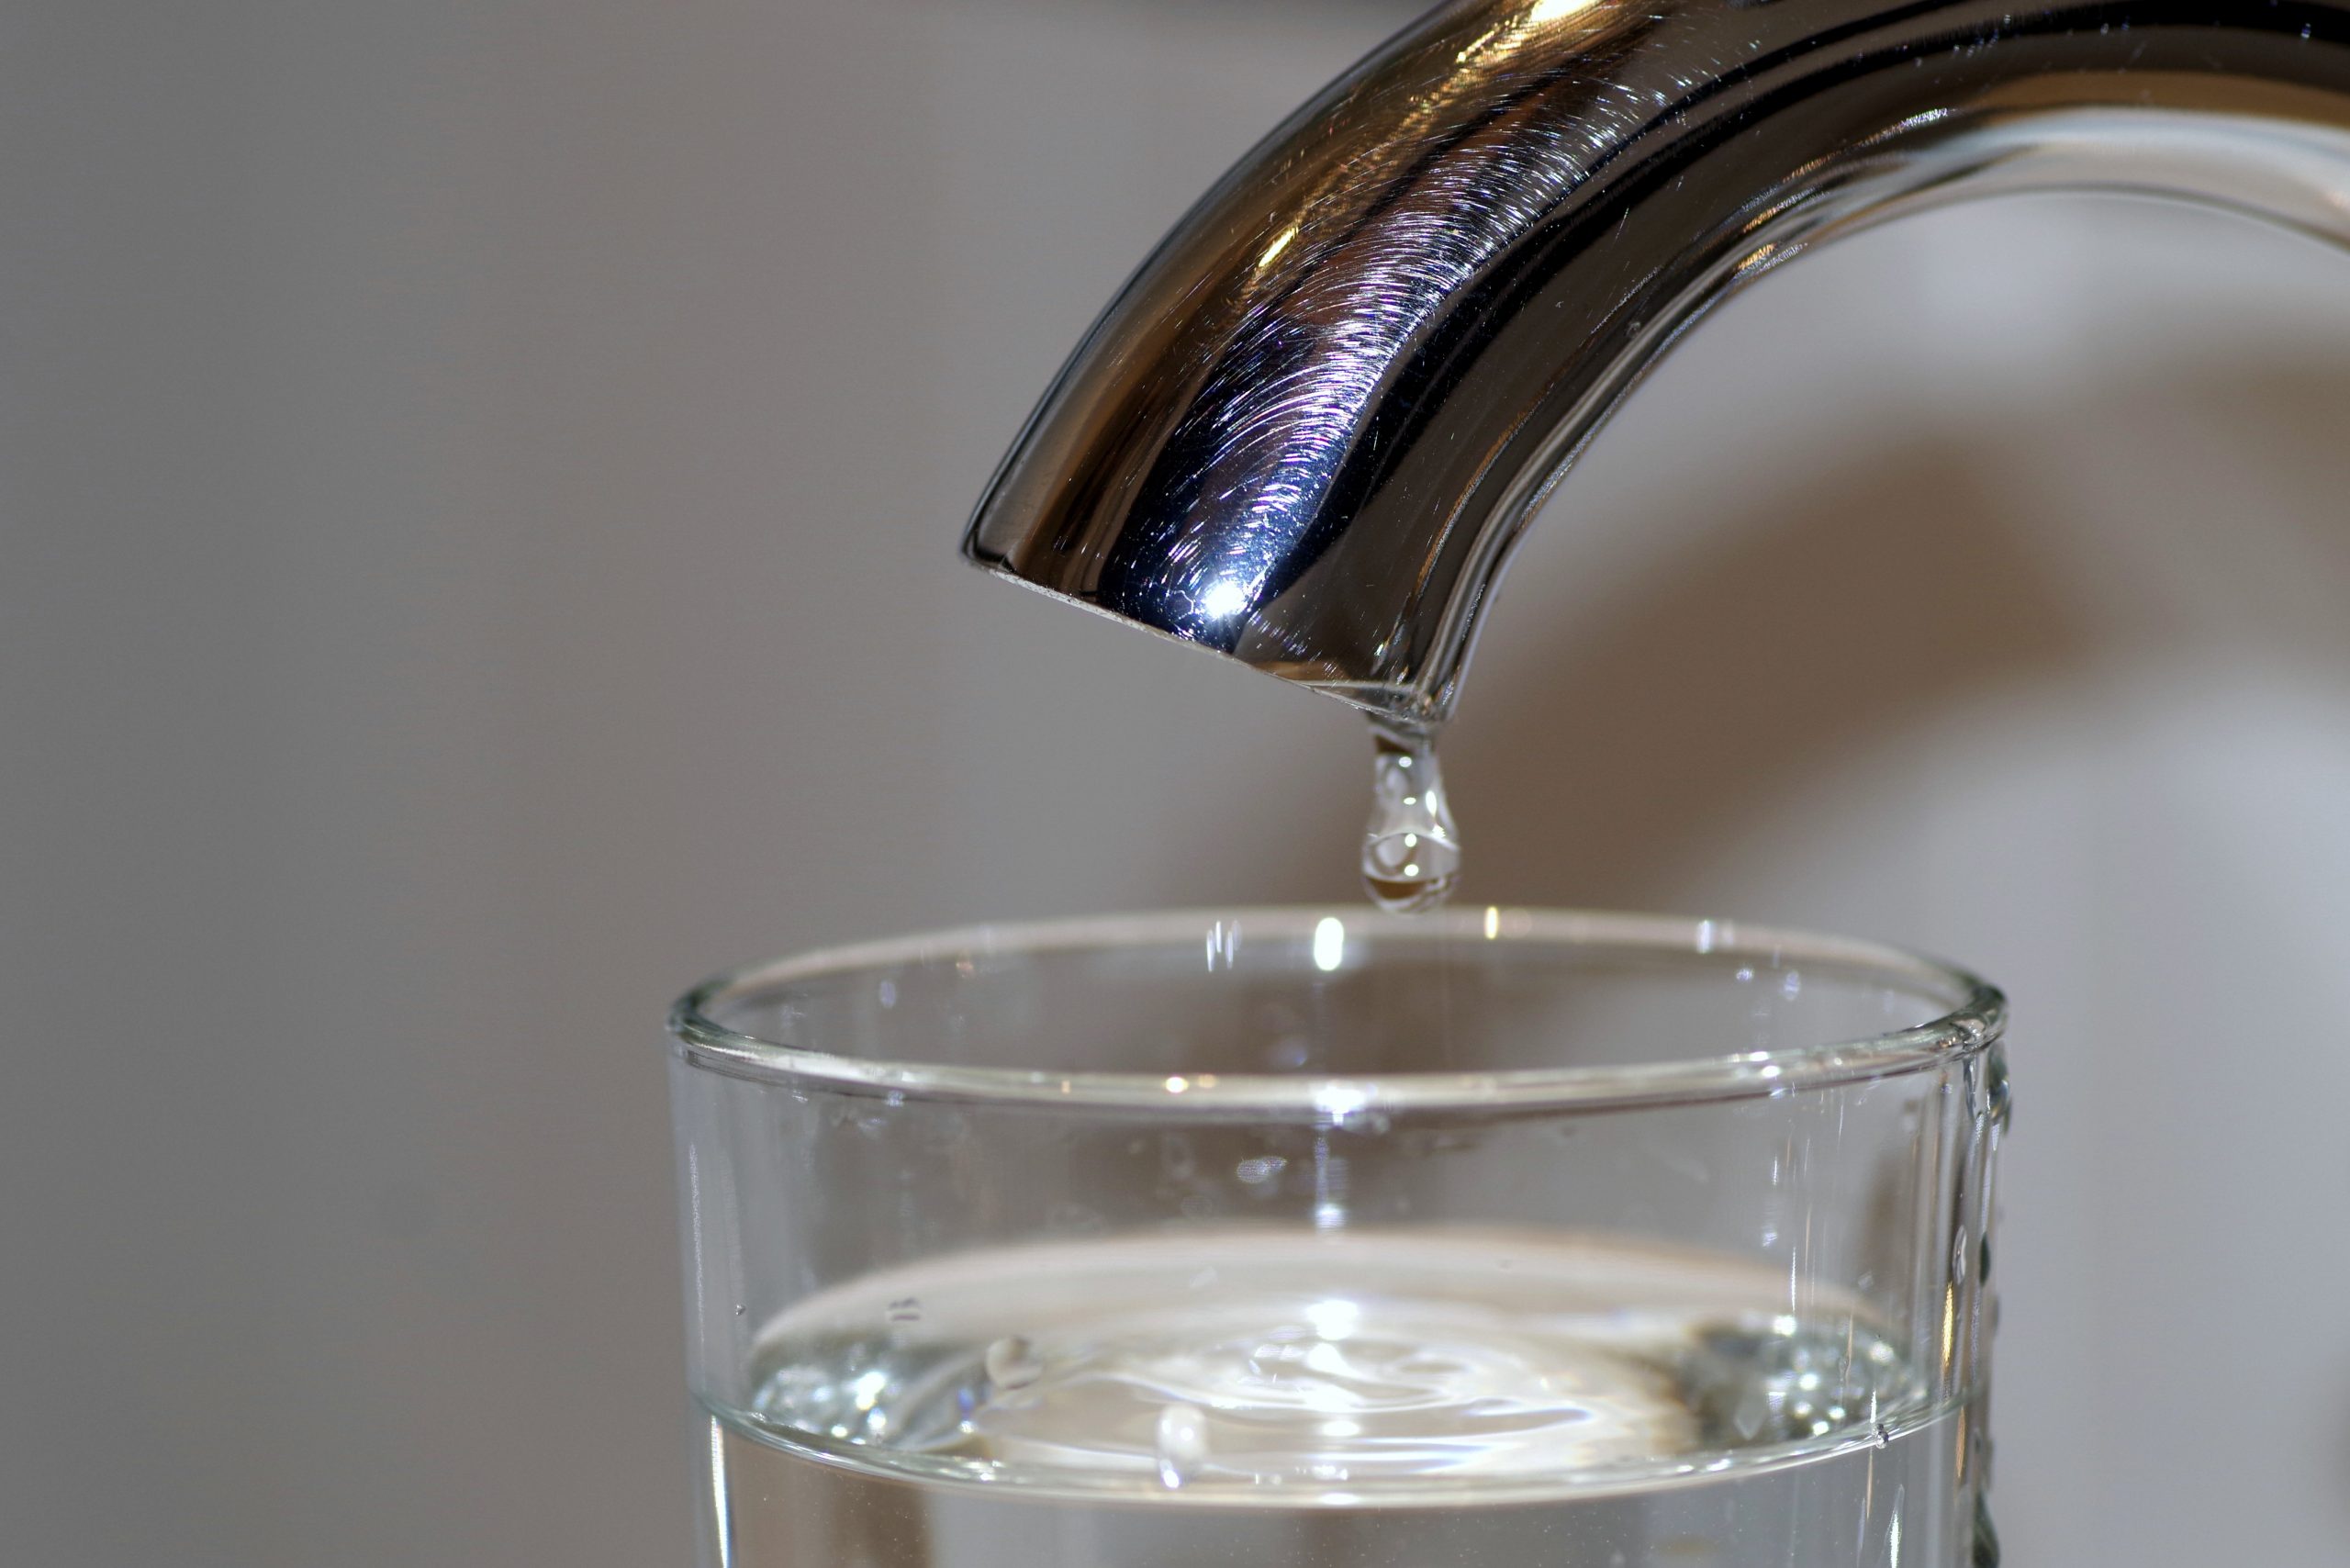 Carafe filtrante : Est-ce vraiment utile de filtrer son eau ?